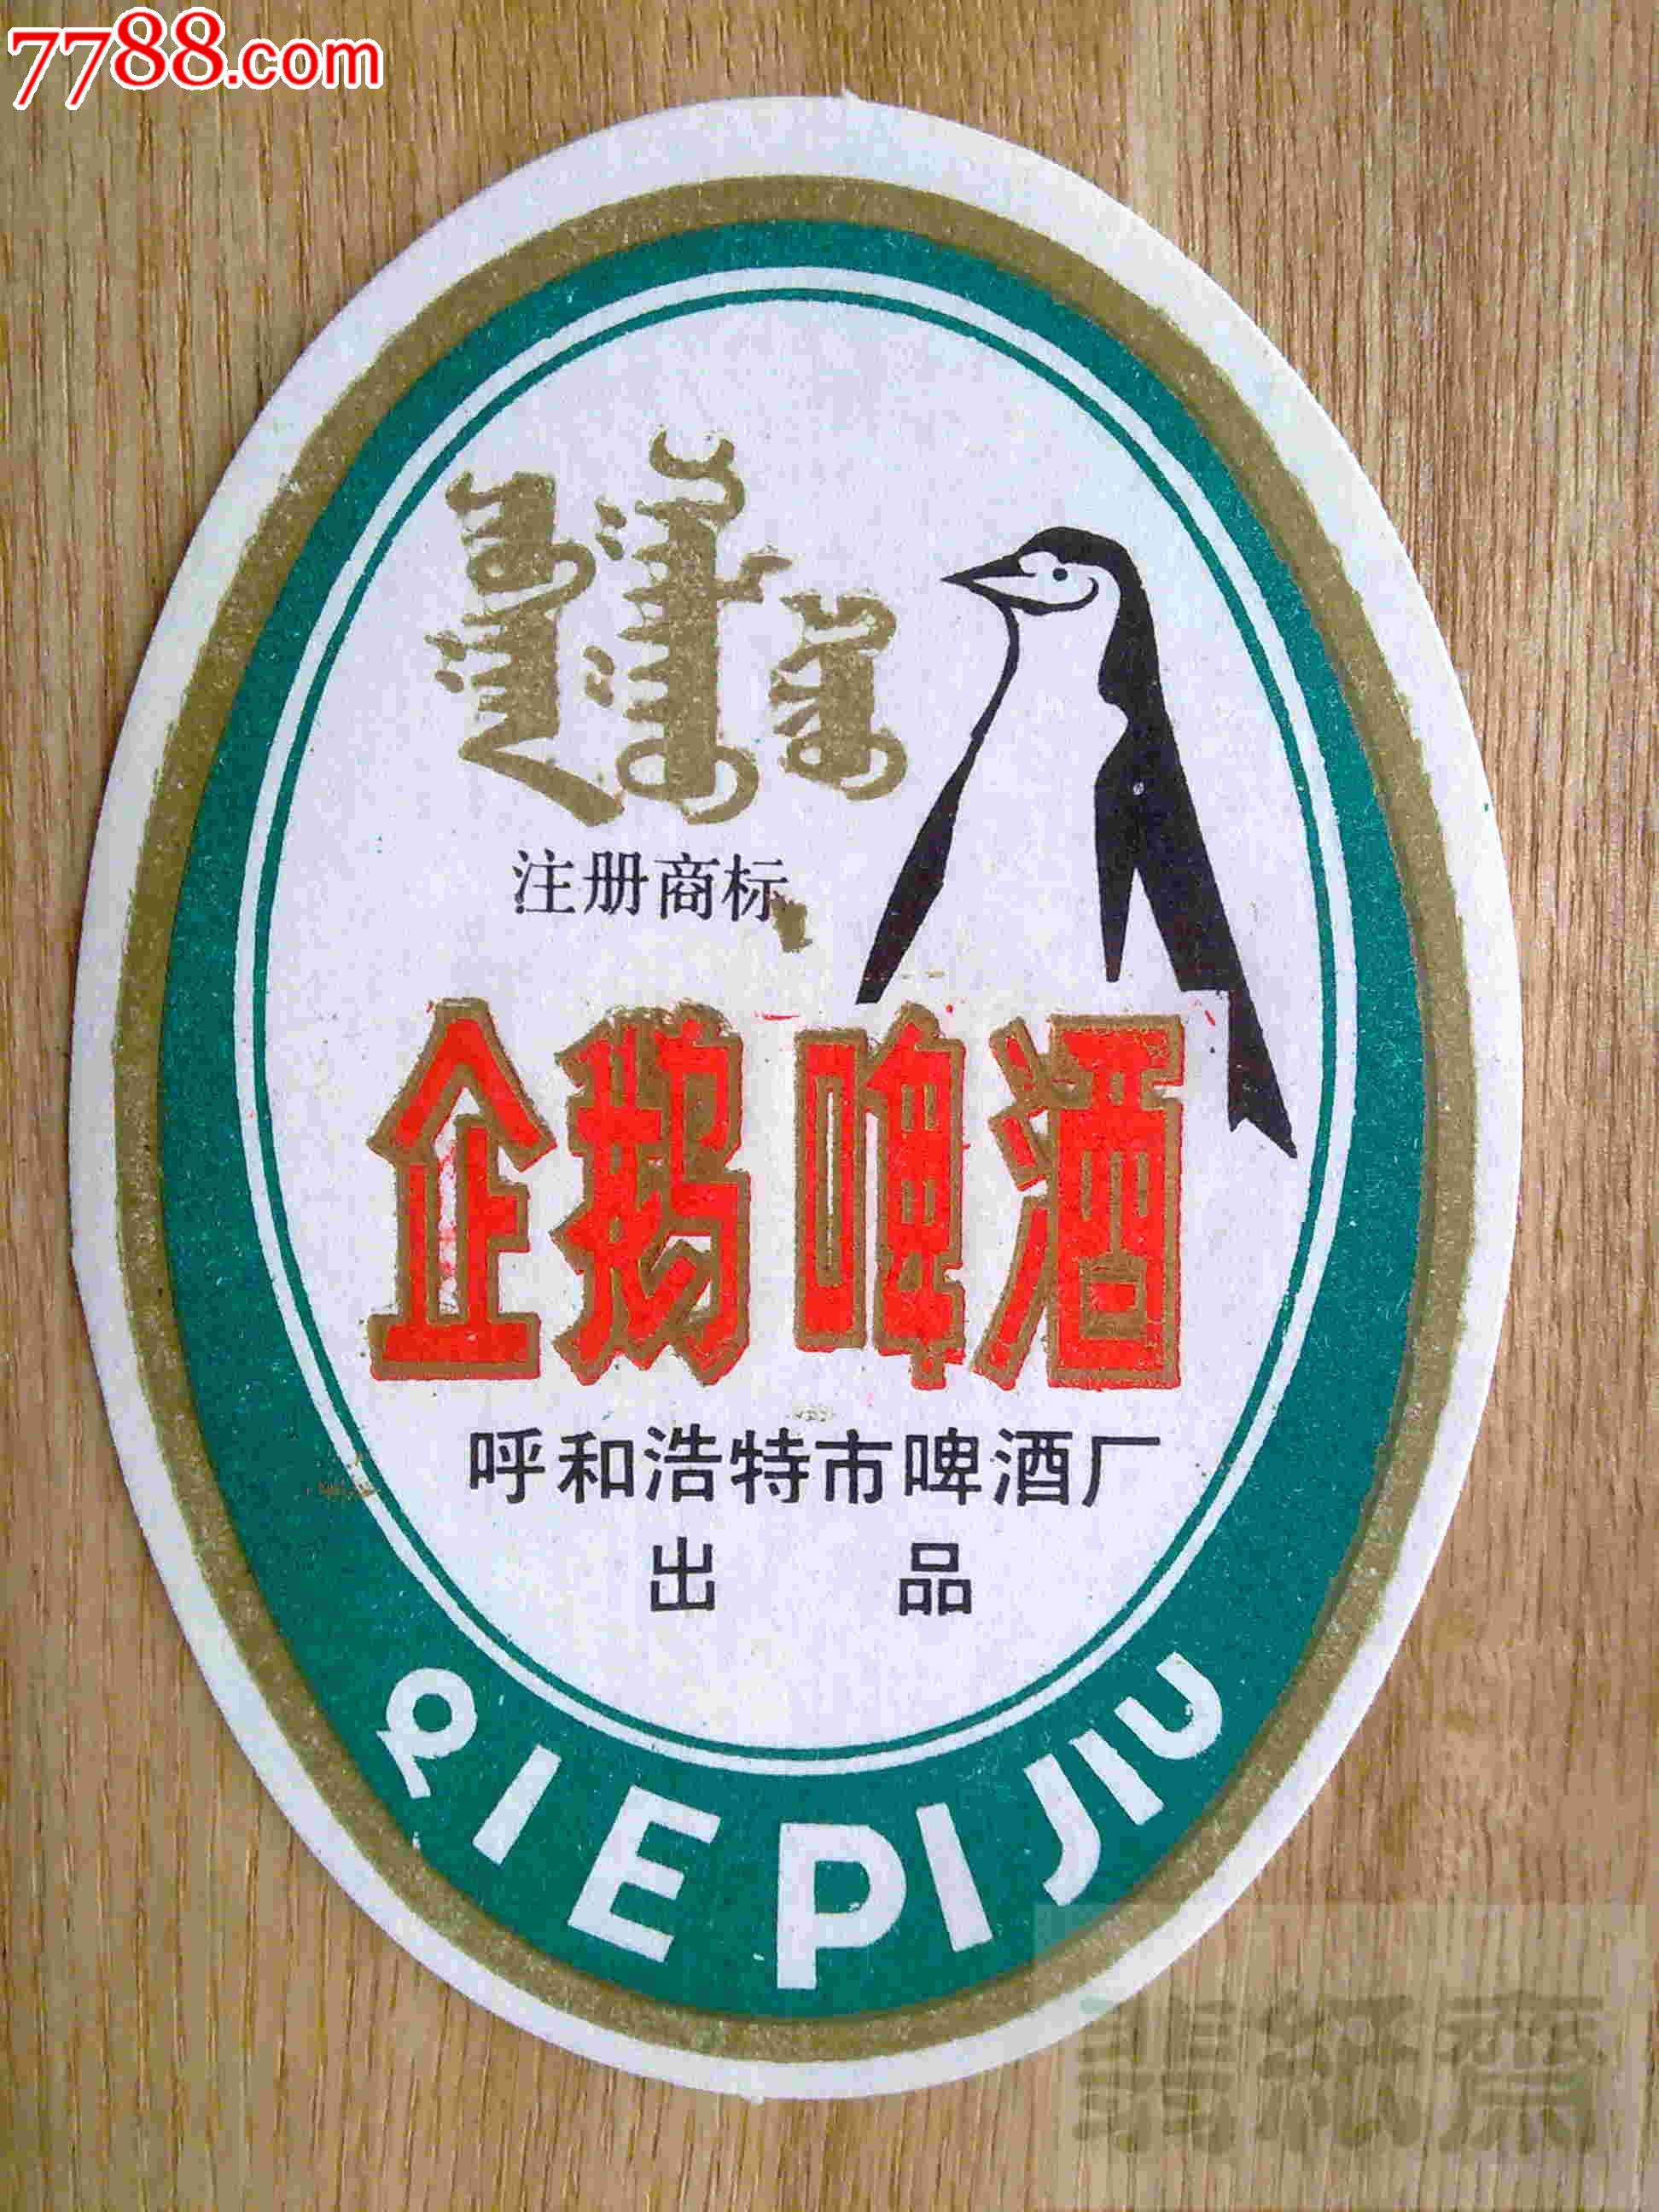 昆明小企鹅啤酒图片